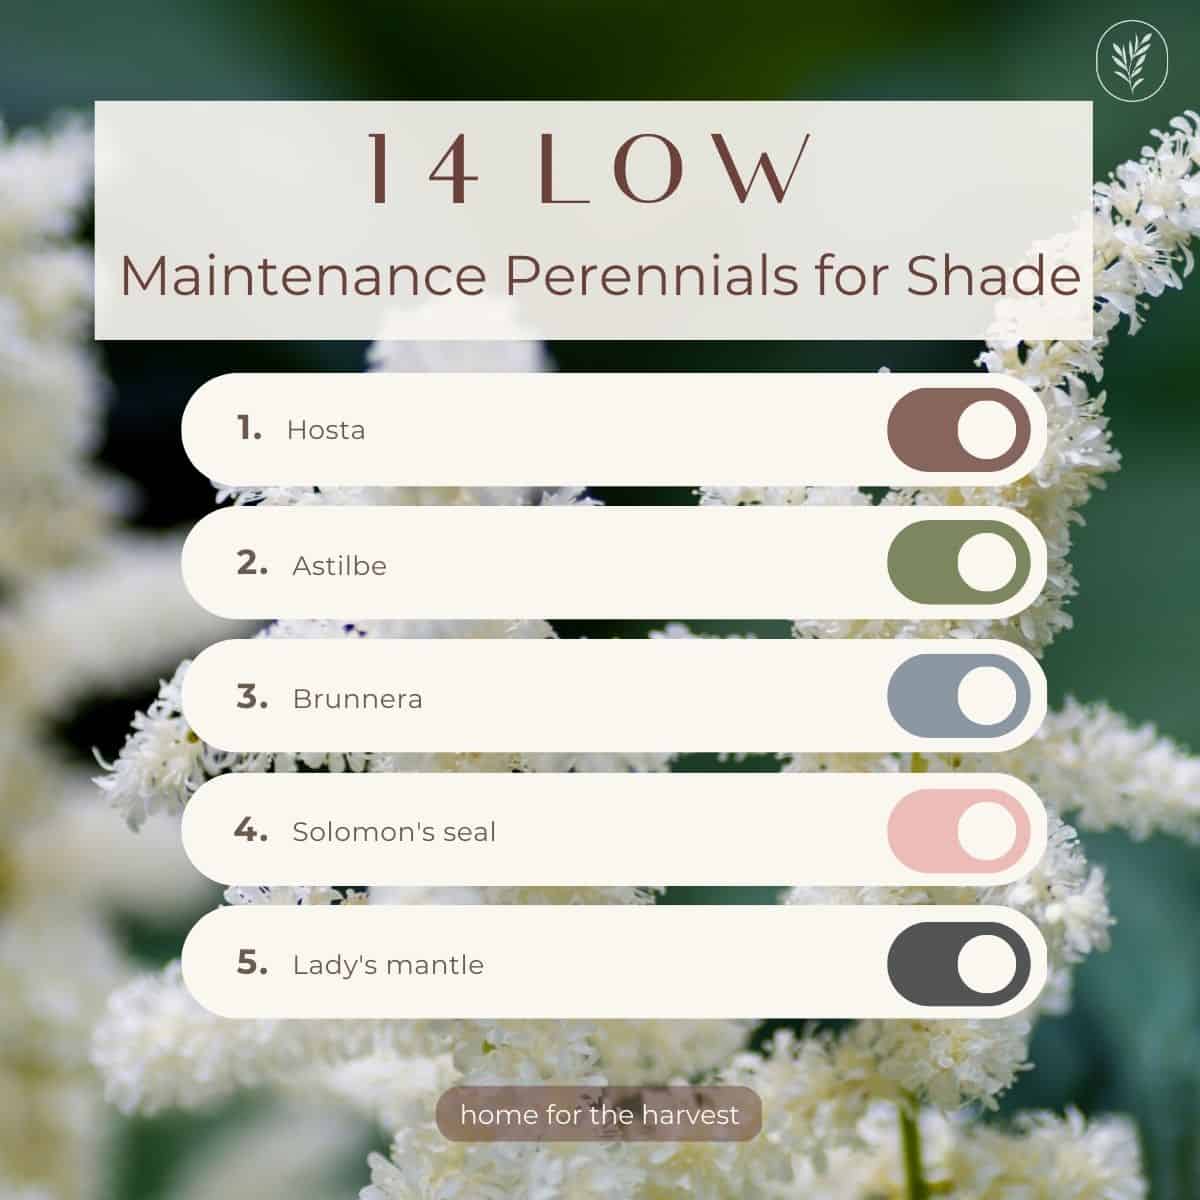 14 low maintenance perennials for shade - instagram via @home4theharvest